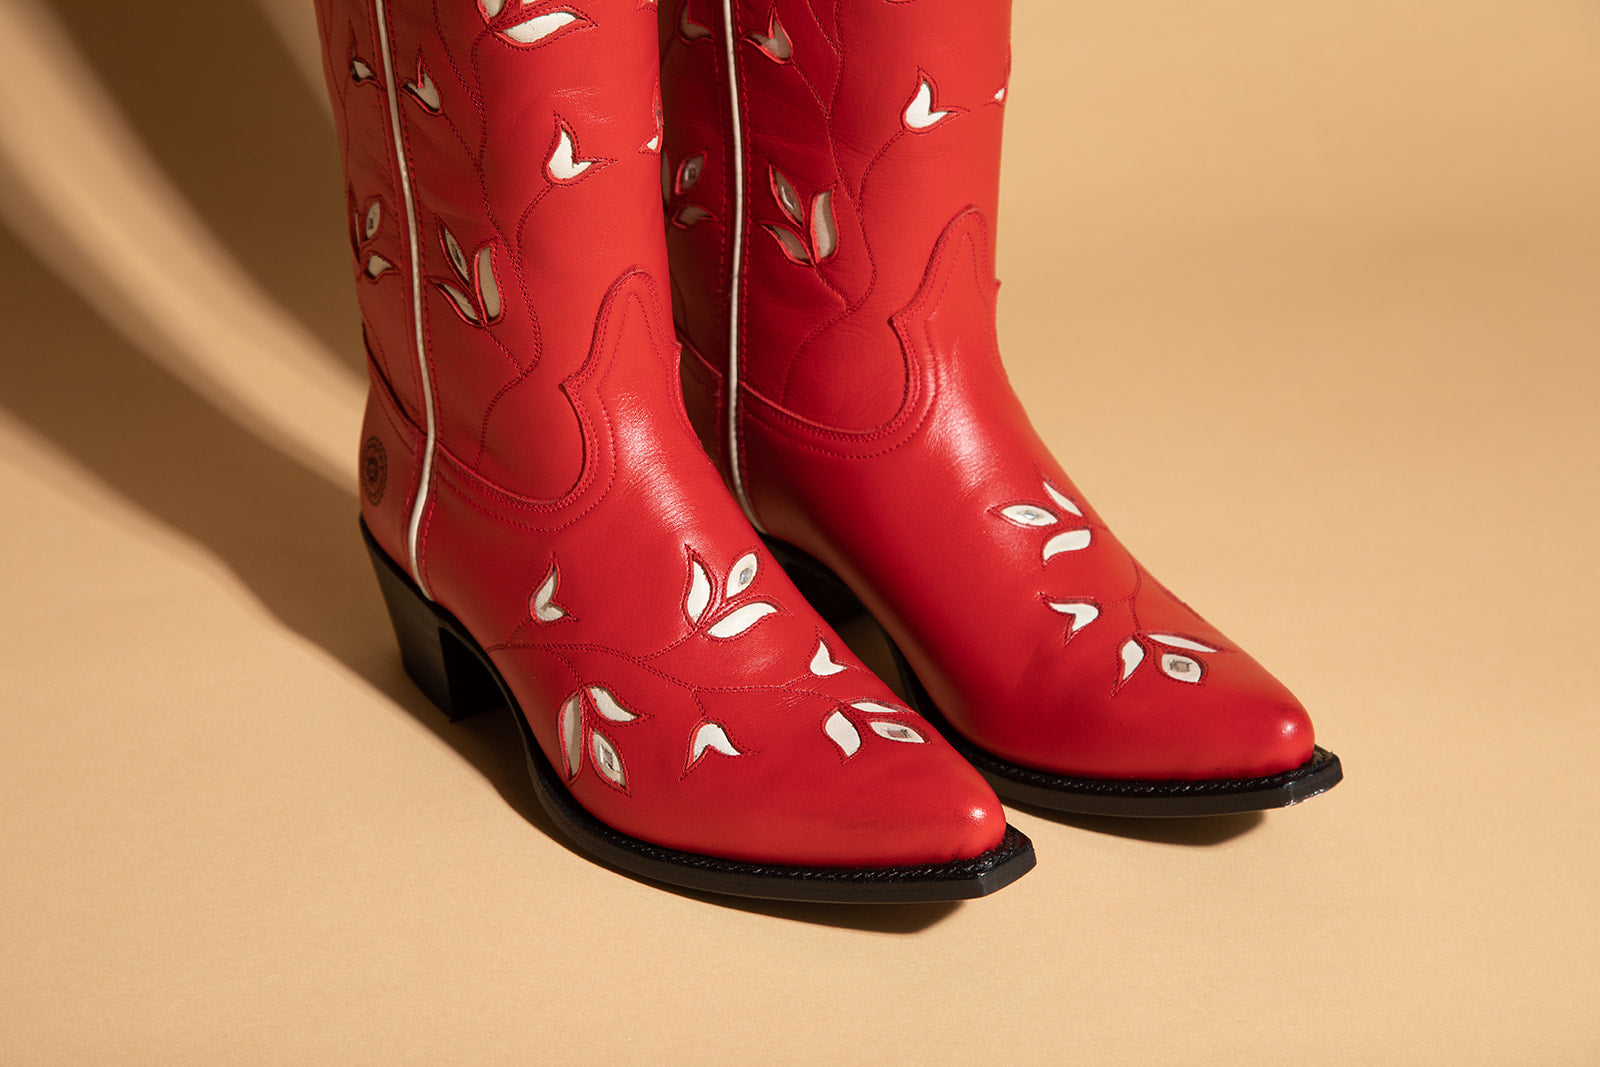 Ranch Road Boots - Scarlett Butterfly - Western Women's Boots